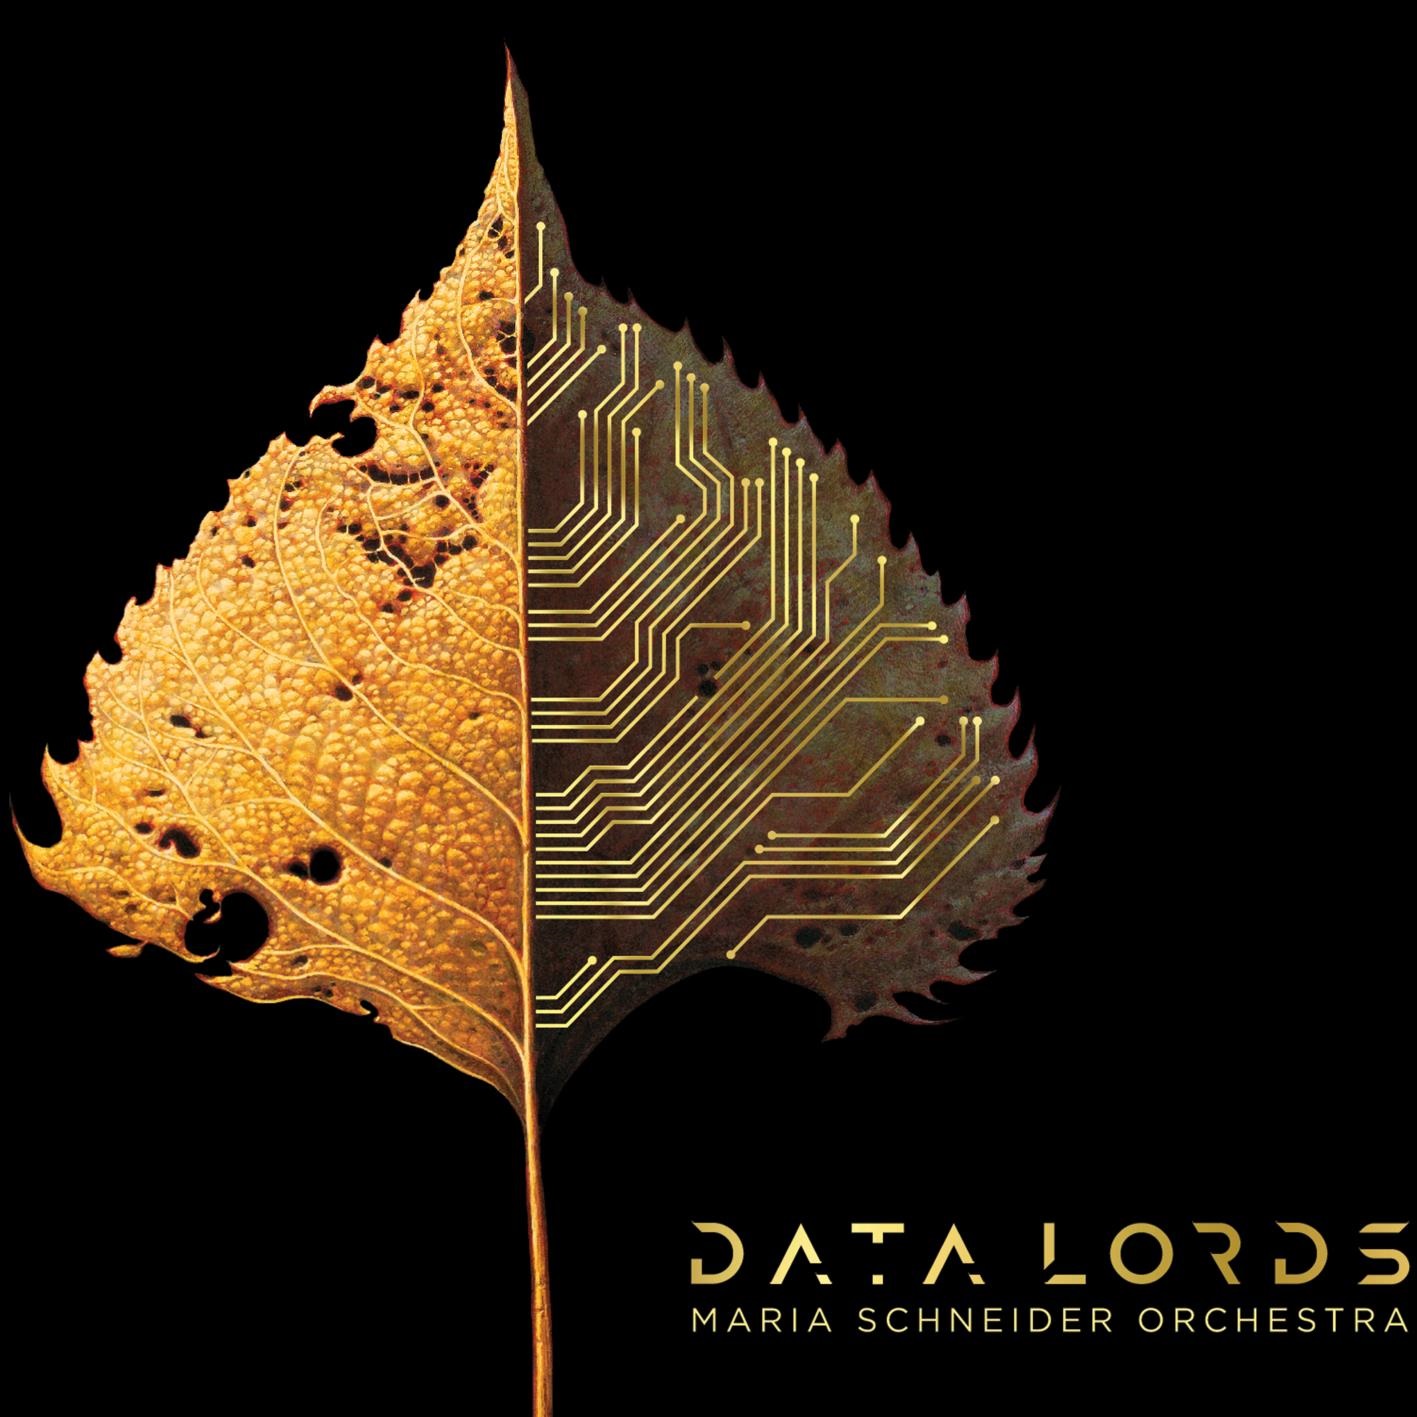 Maria Schneider Orchestra – Data Lords (2020) [FLAC 24bit/96kHz]